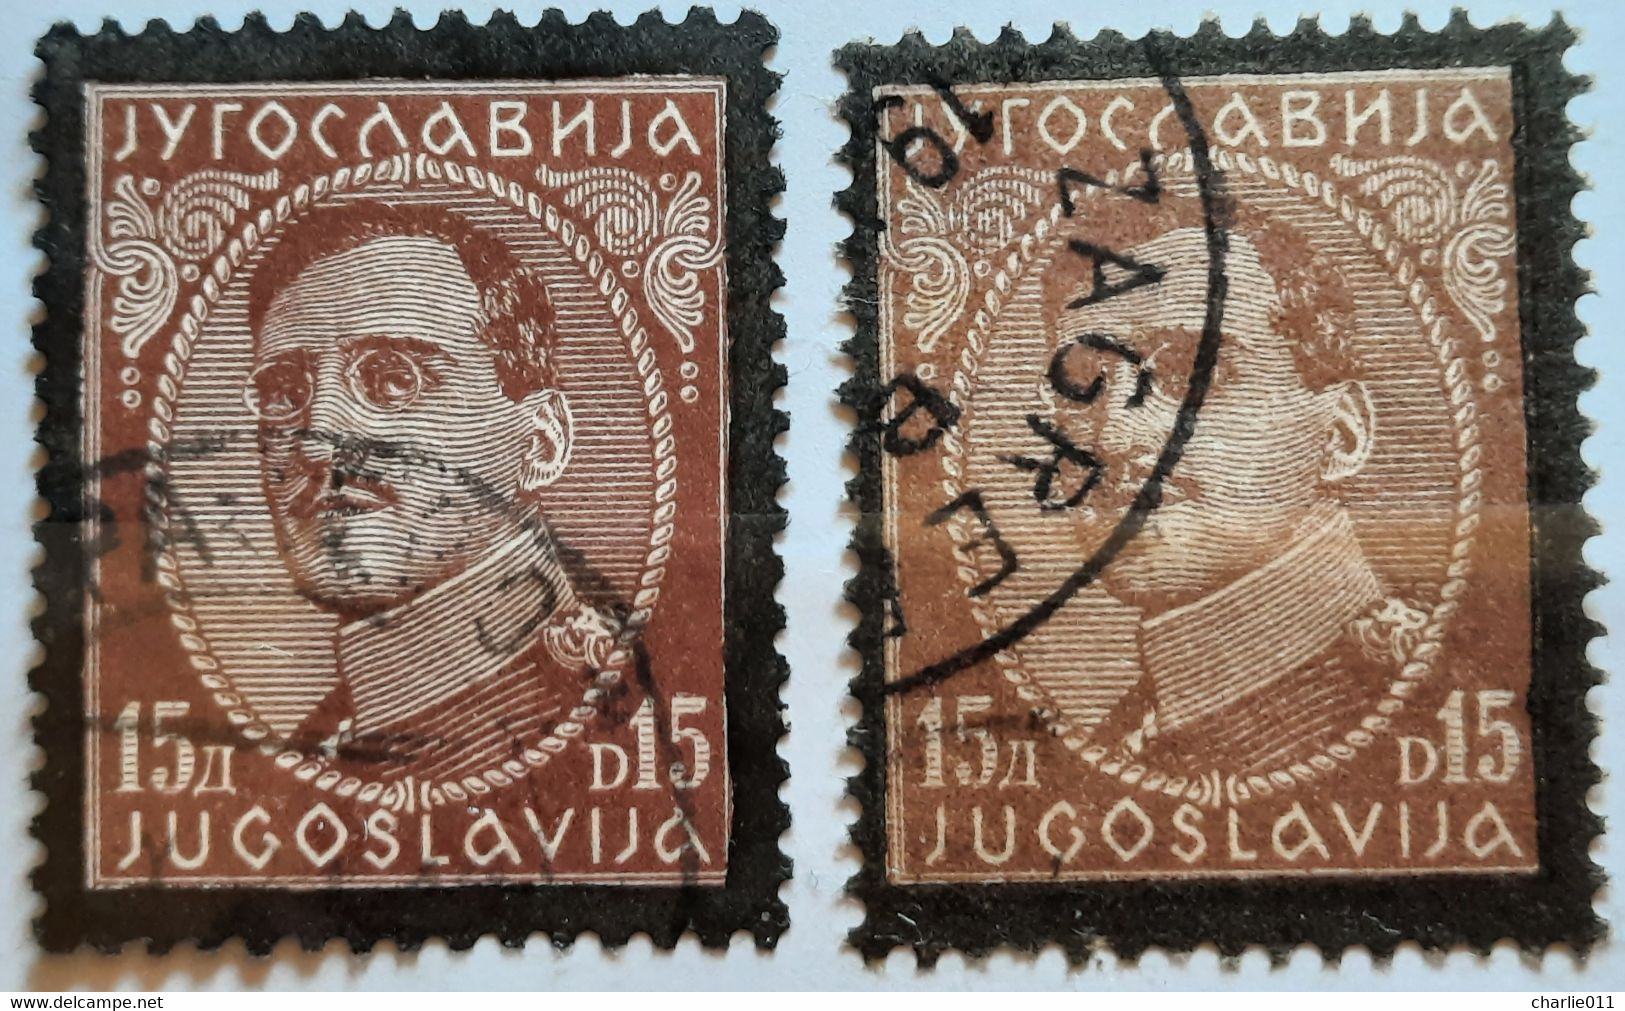 KING ALEXANDER-15 D-BLACK OVERPRINT-VARIATION-YUGOSLAVIA-1934 - Geschnittene, Druckproben Und Abarten